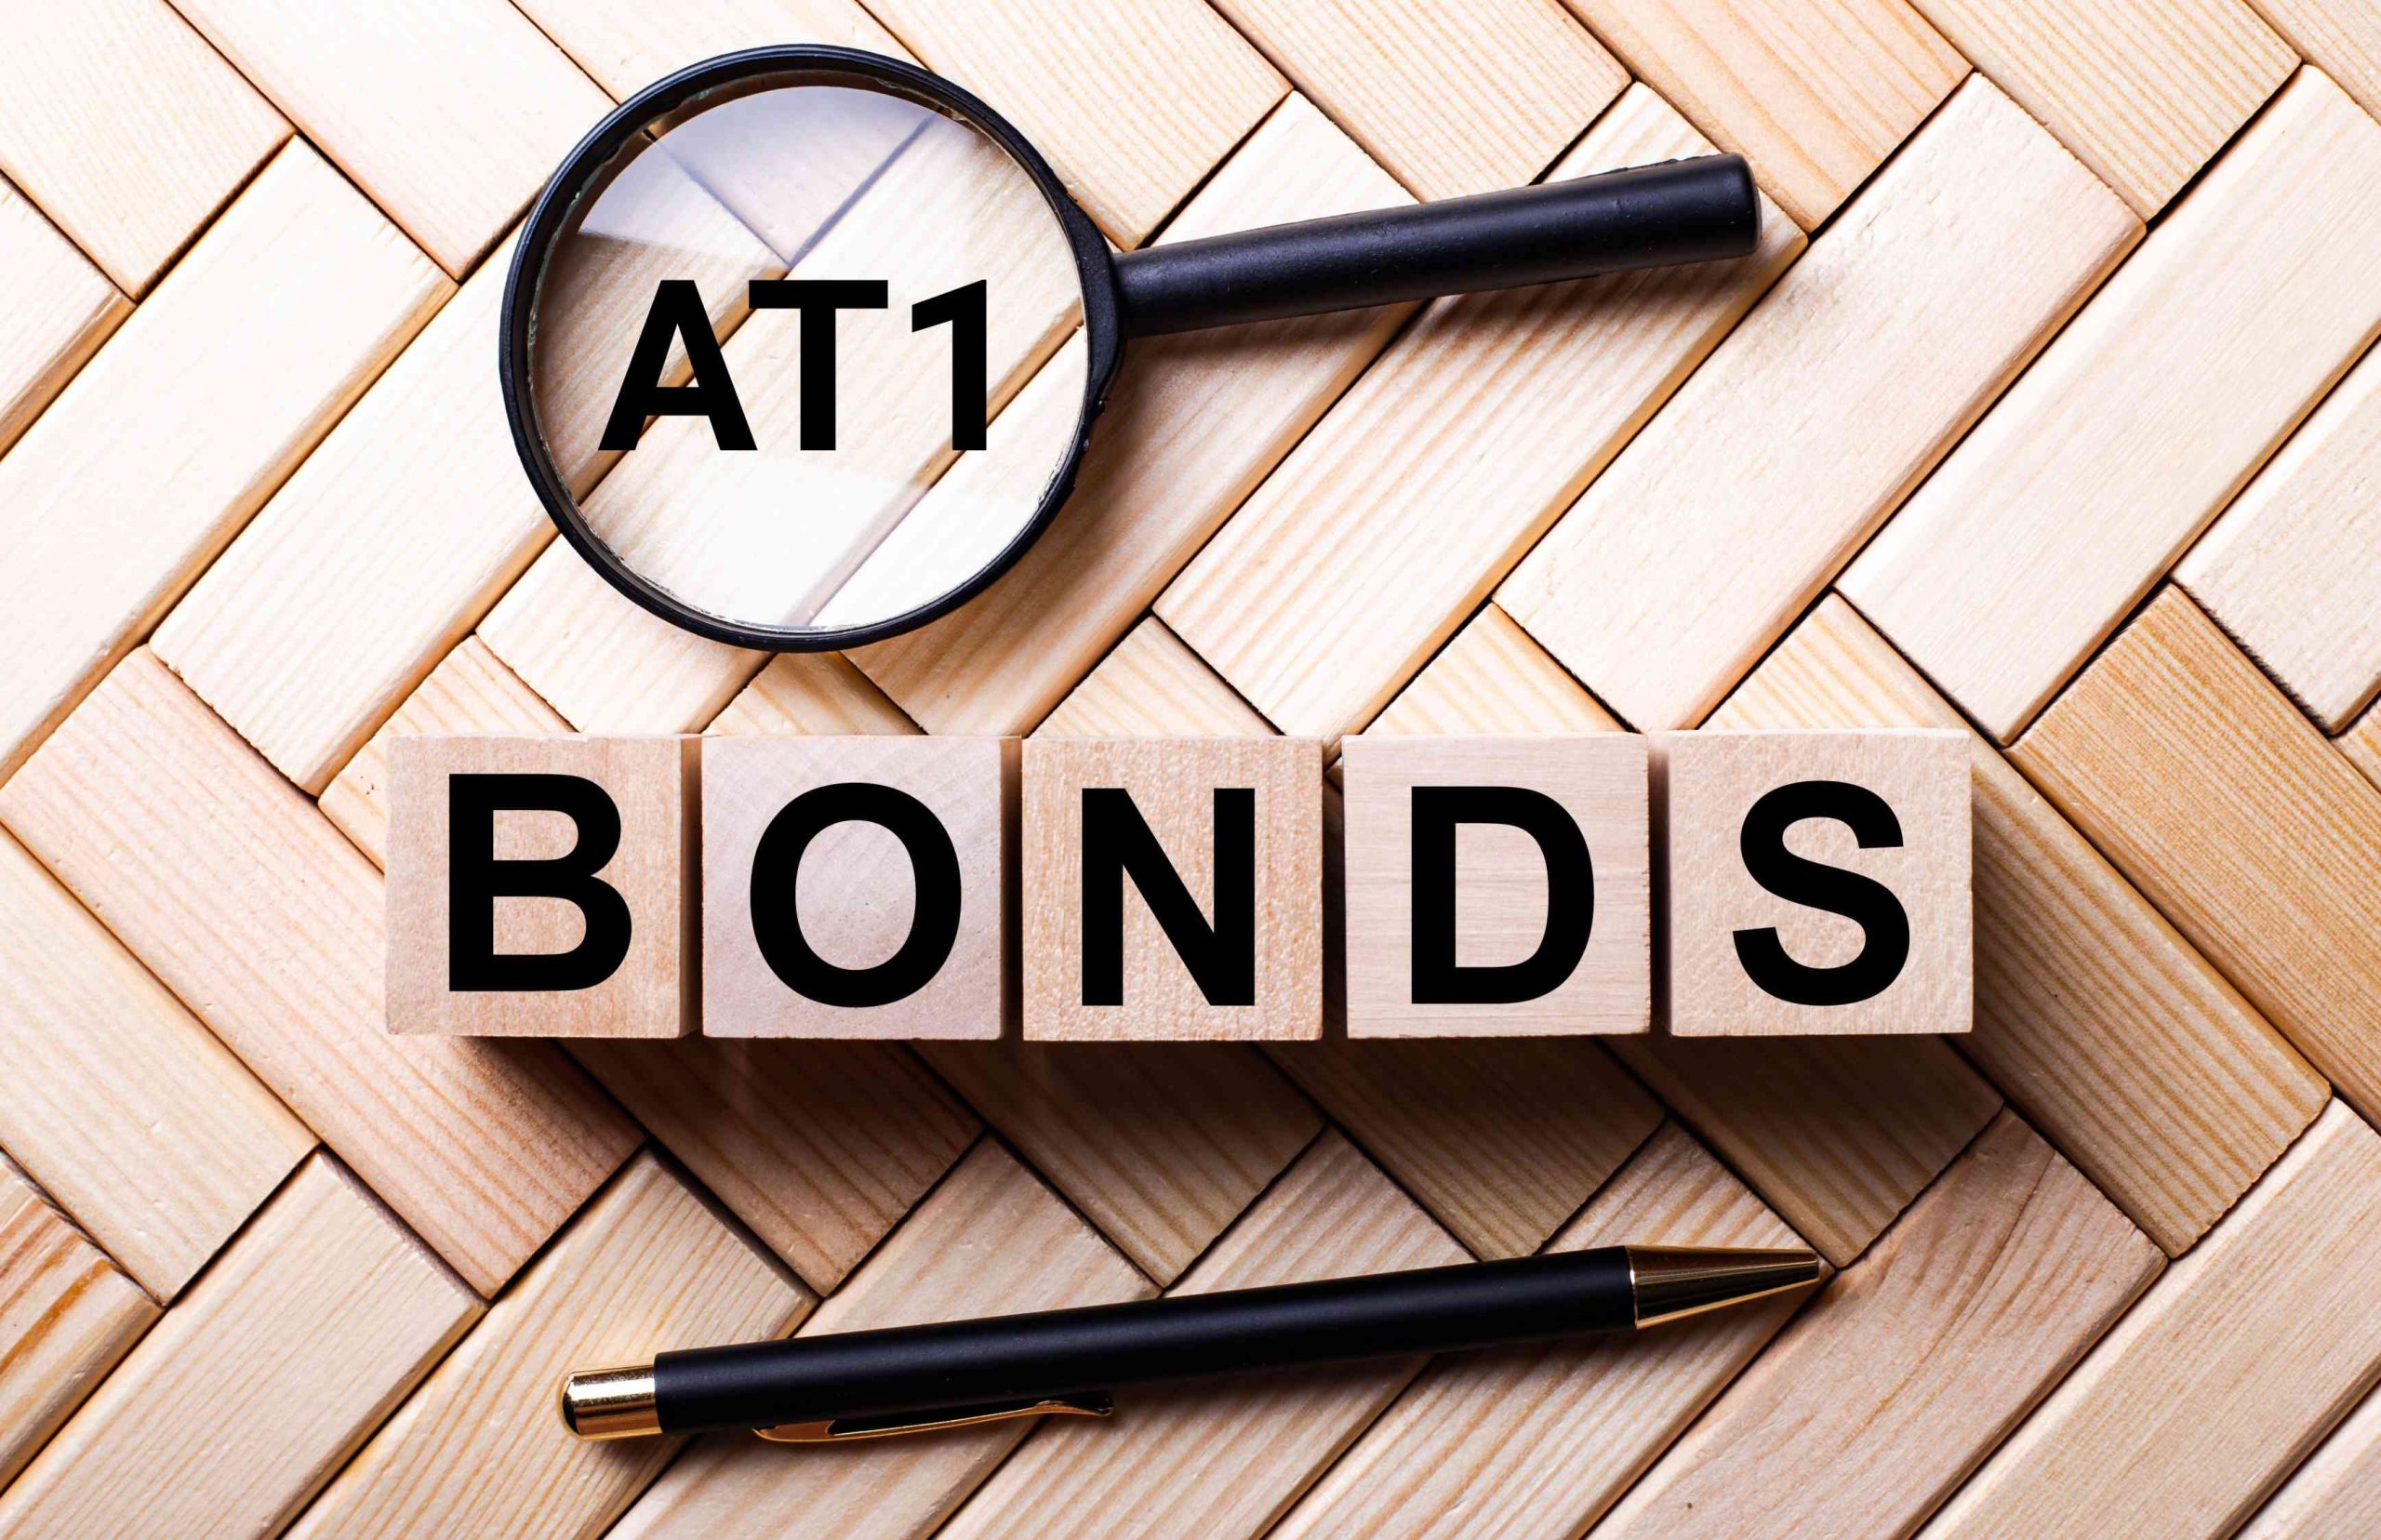 Bond AT1 rinati dopo il crac di Credit Suisse